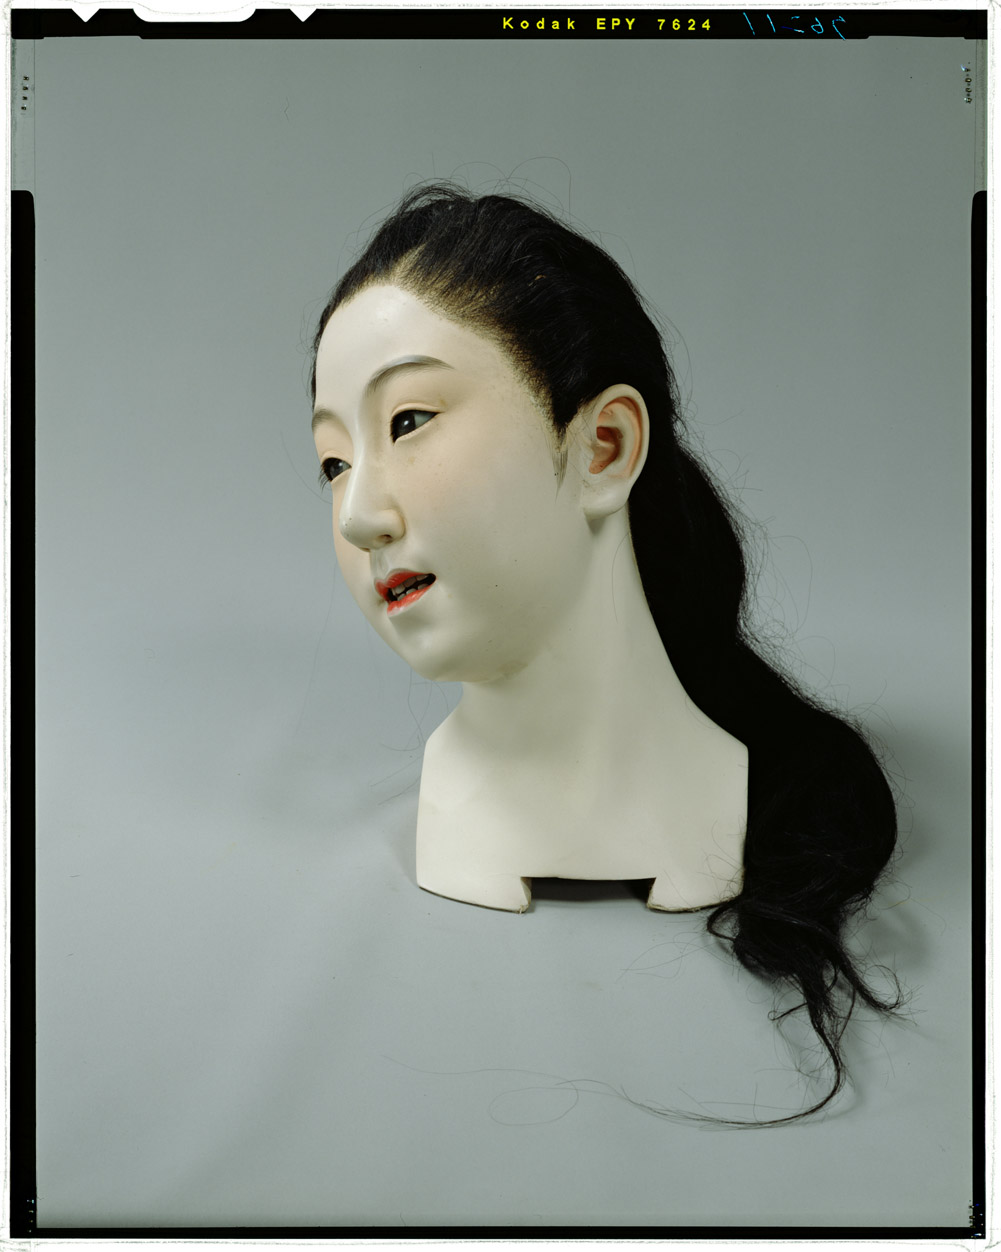 C 生き人形 明治令嬢体 束髪立姿 の頭部 東京国立博物館 画像検索